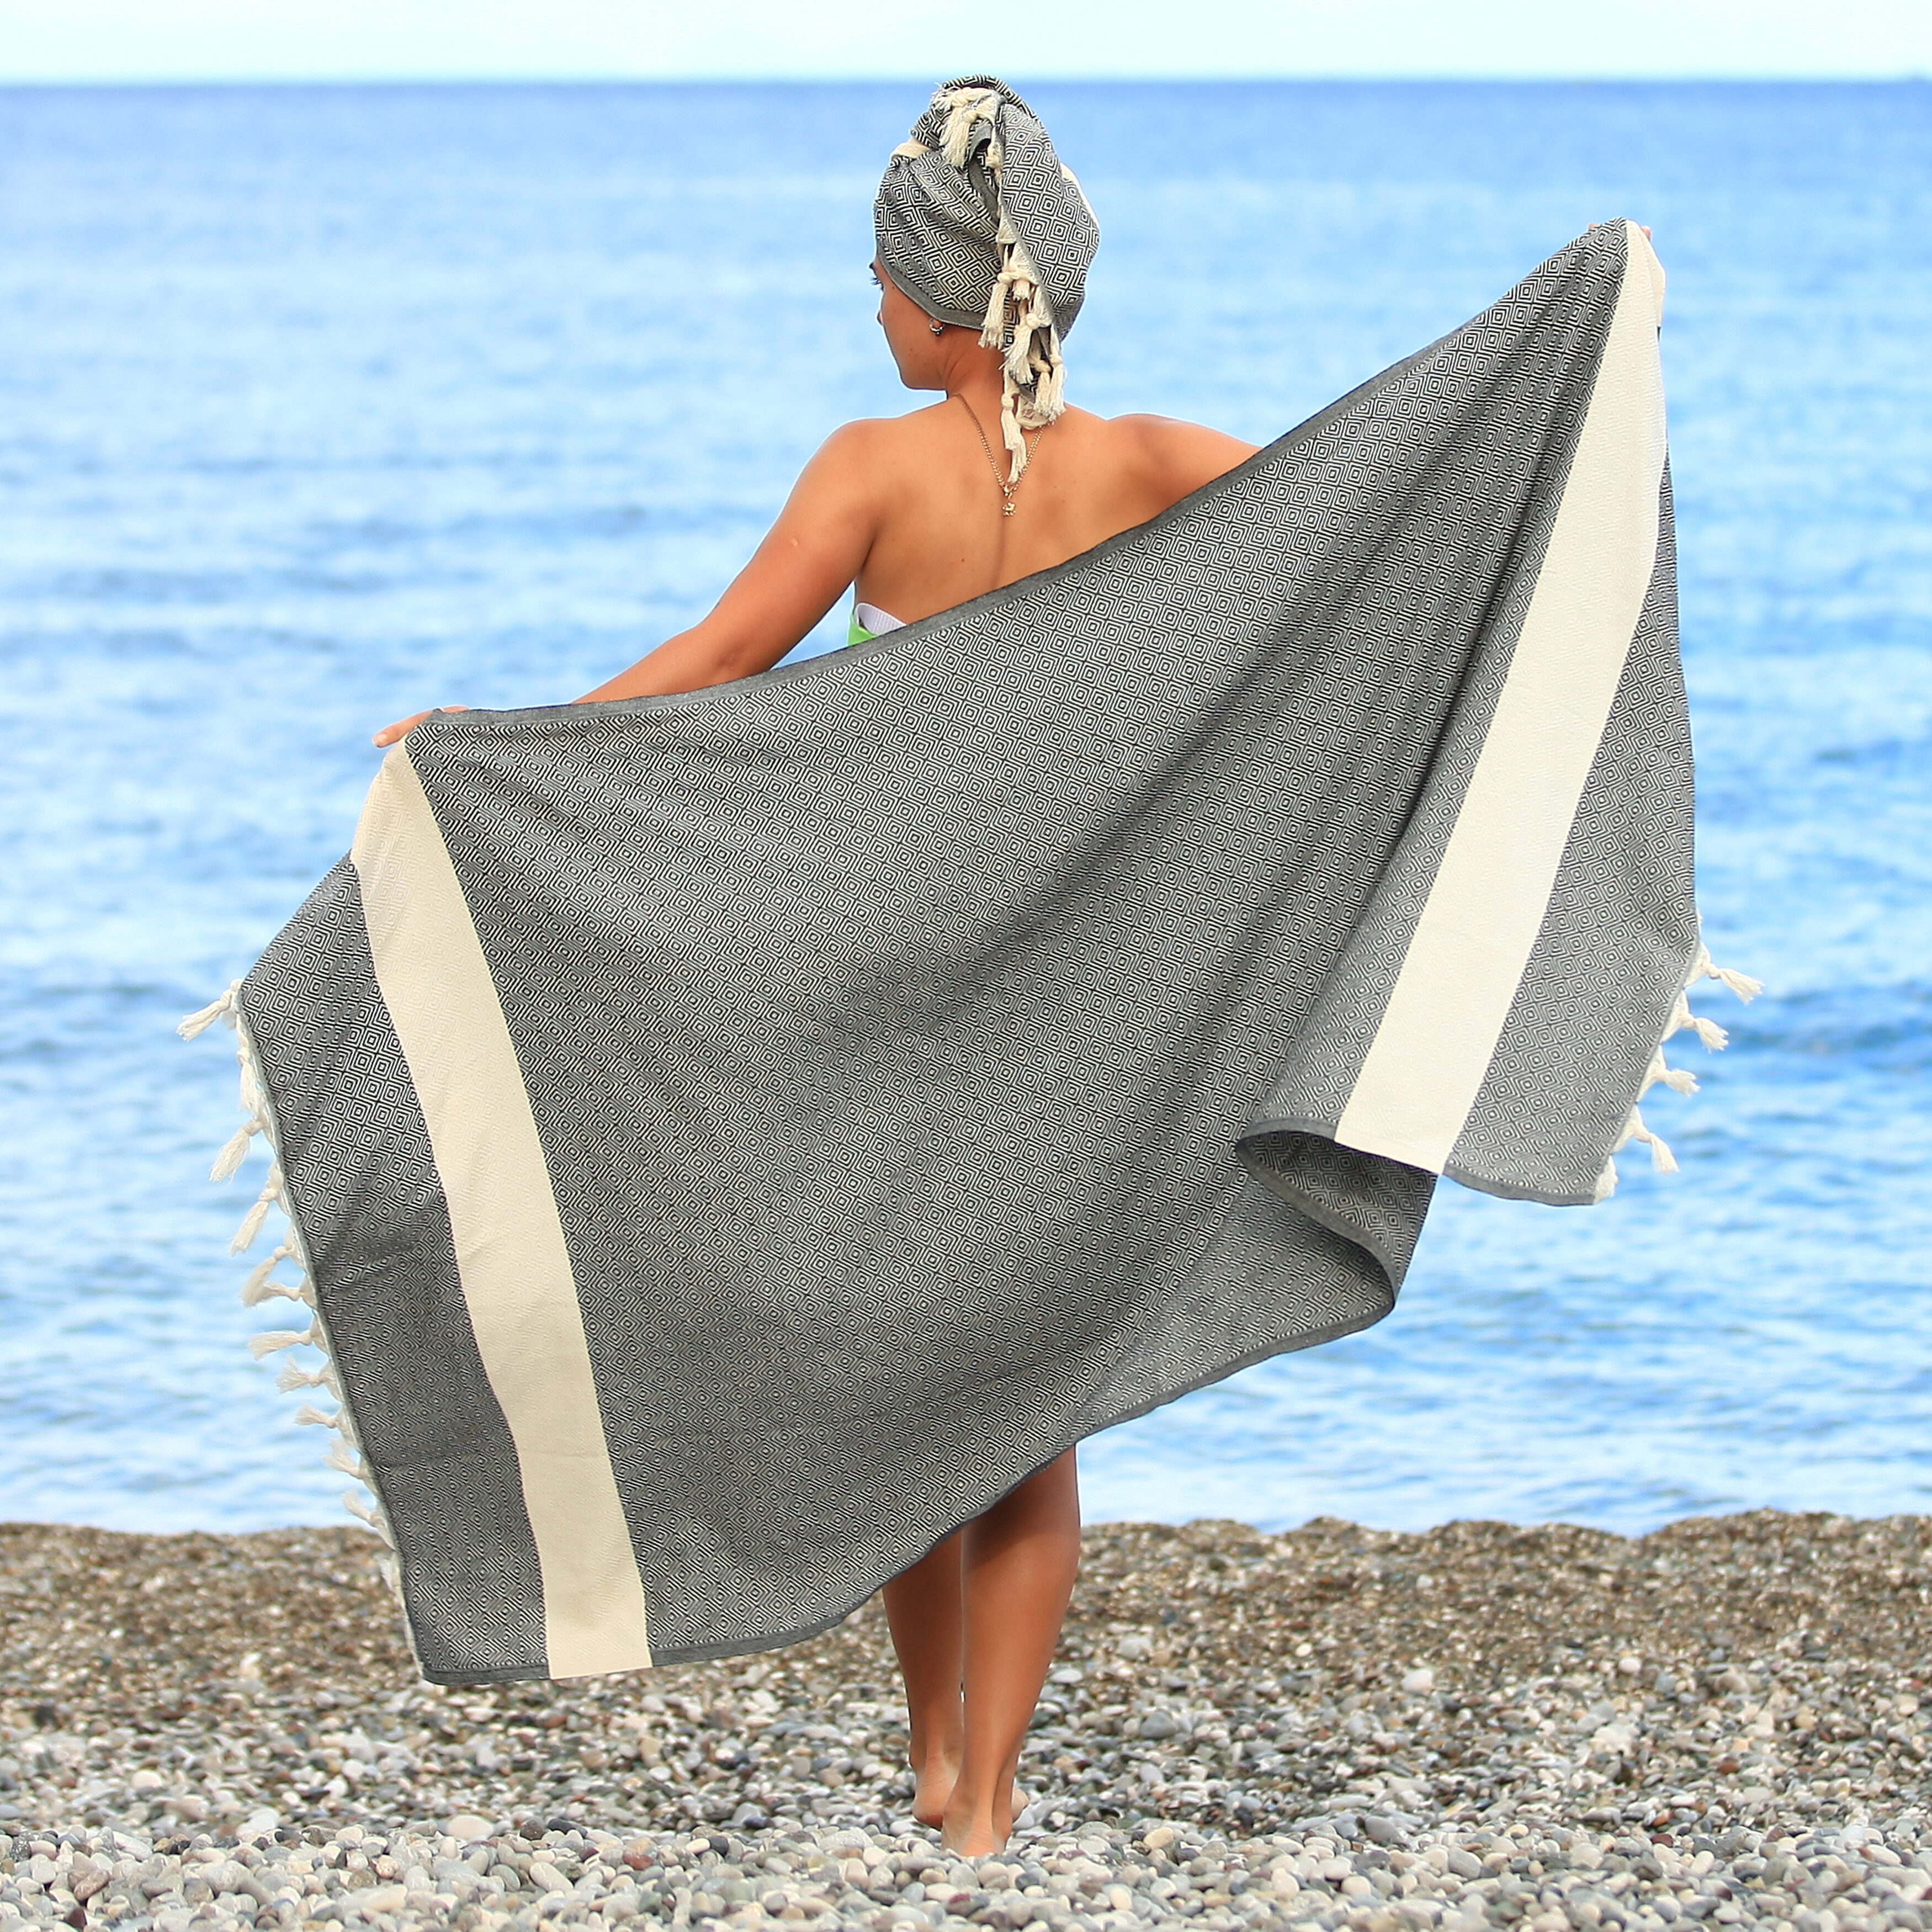 https://assets.wfcdn.com/im/29349442/compr-r85/1977/197749494/astrea-turkish-cotton-beach-towel.jpg